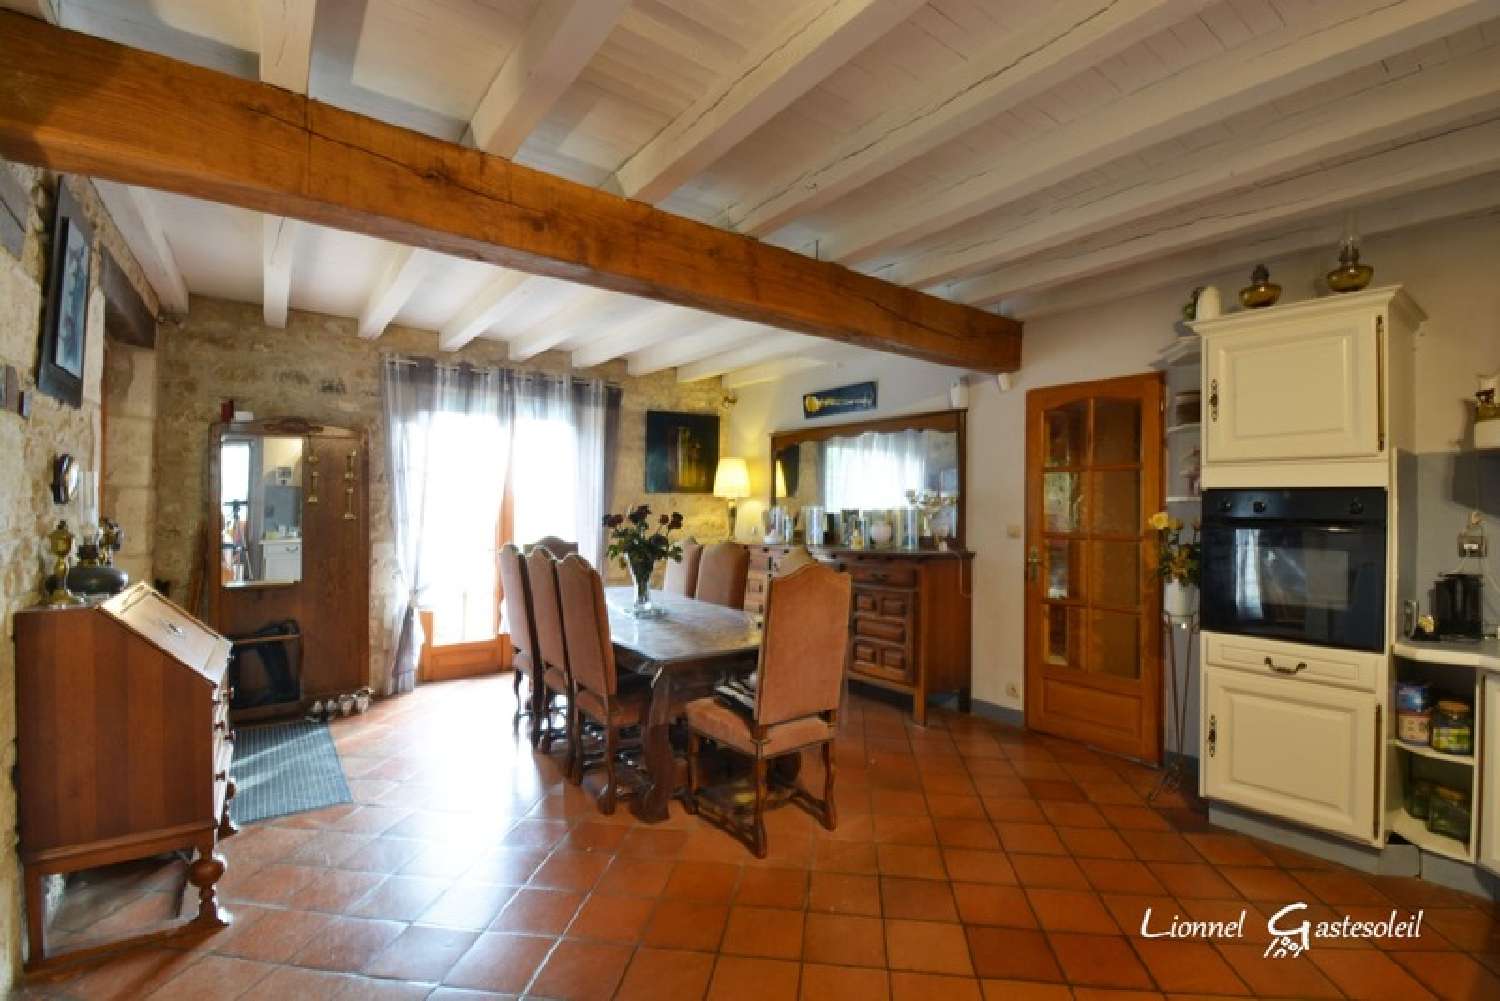  à vendre maison Le Fleix Dordogne 6